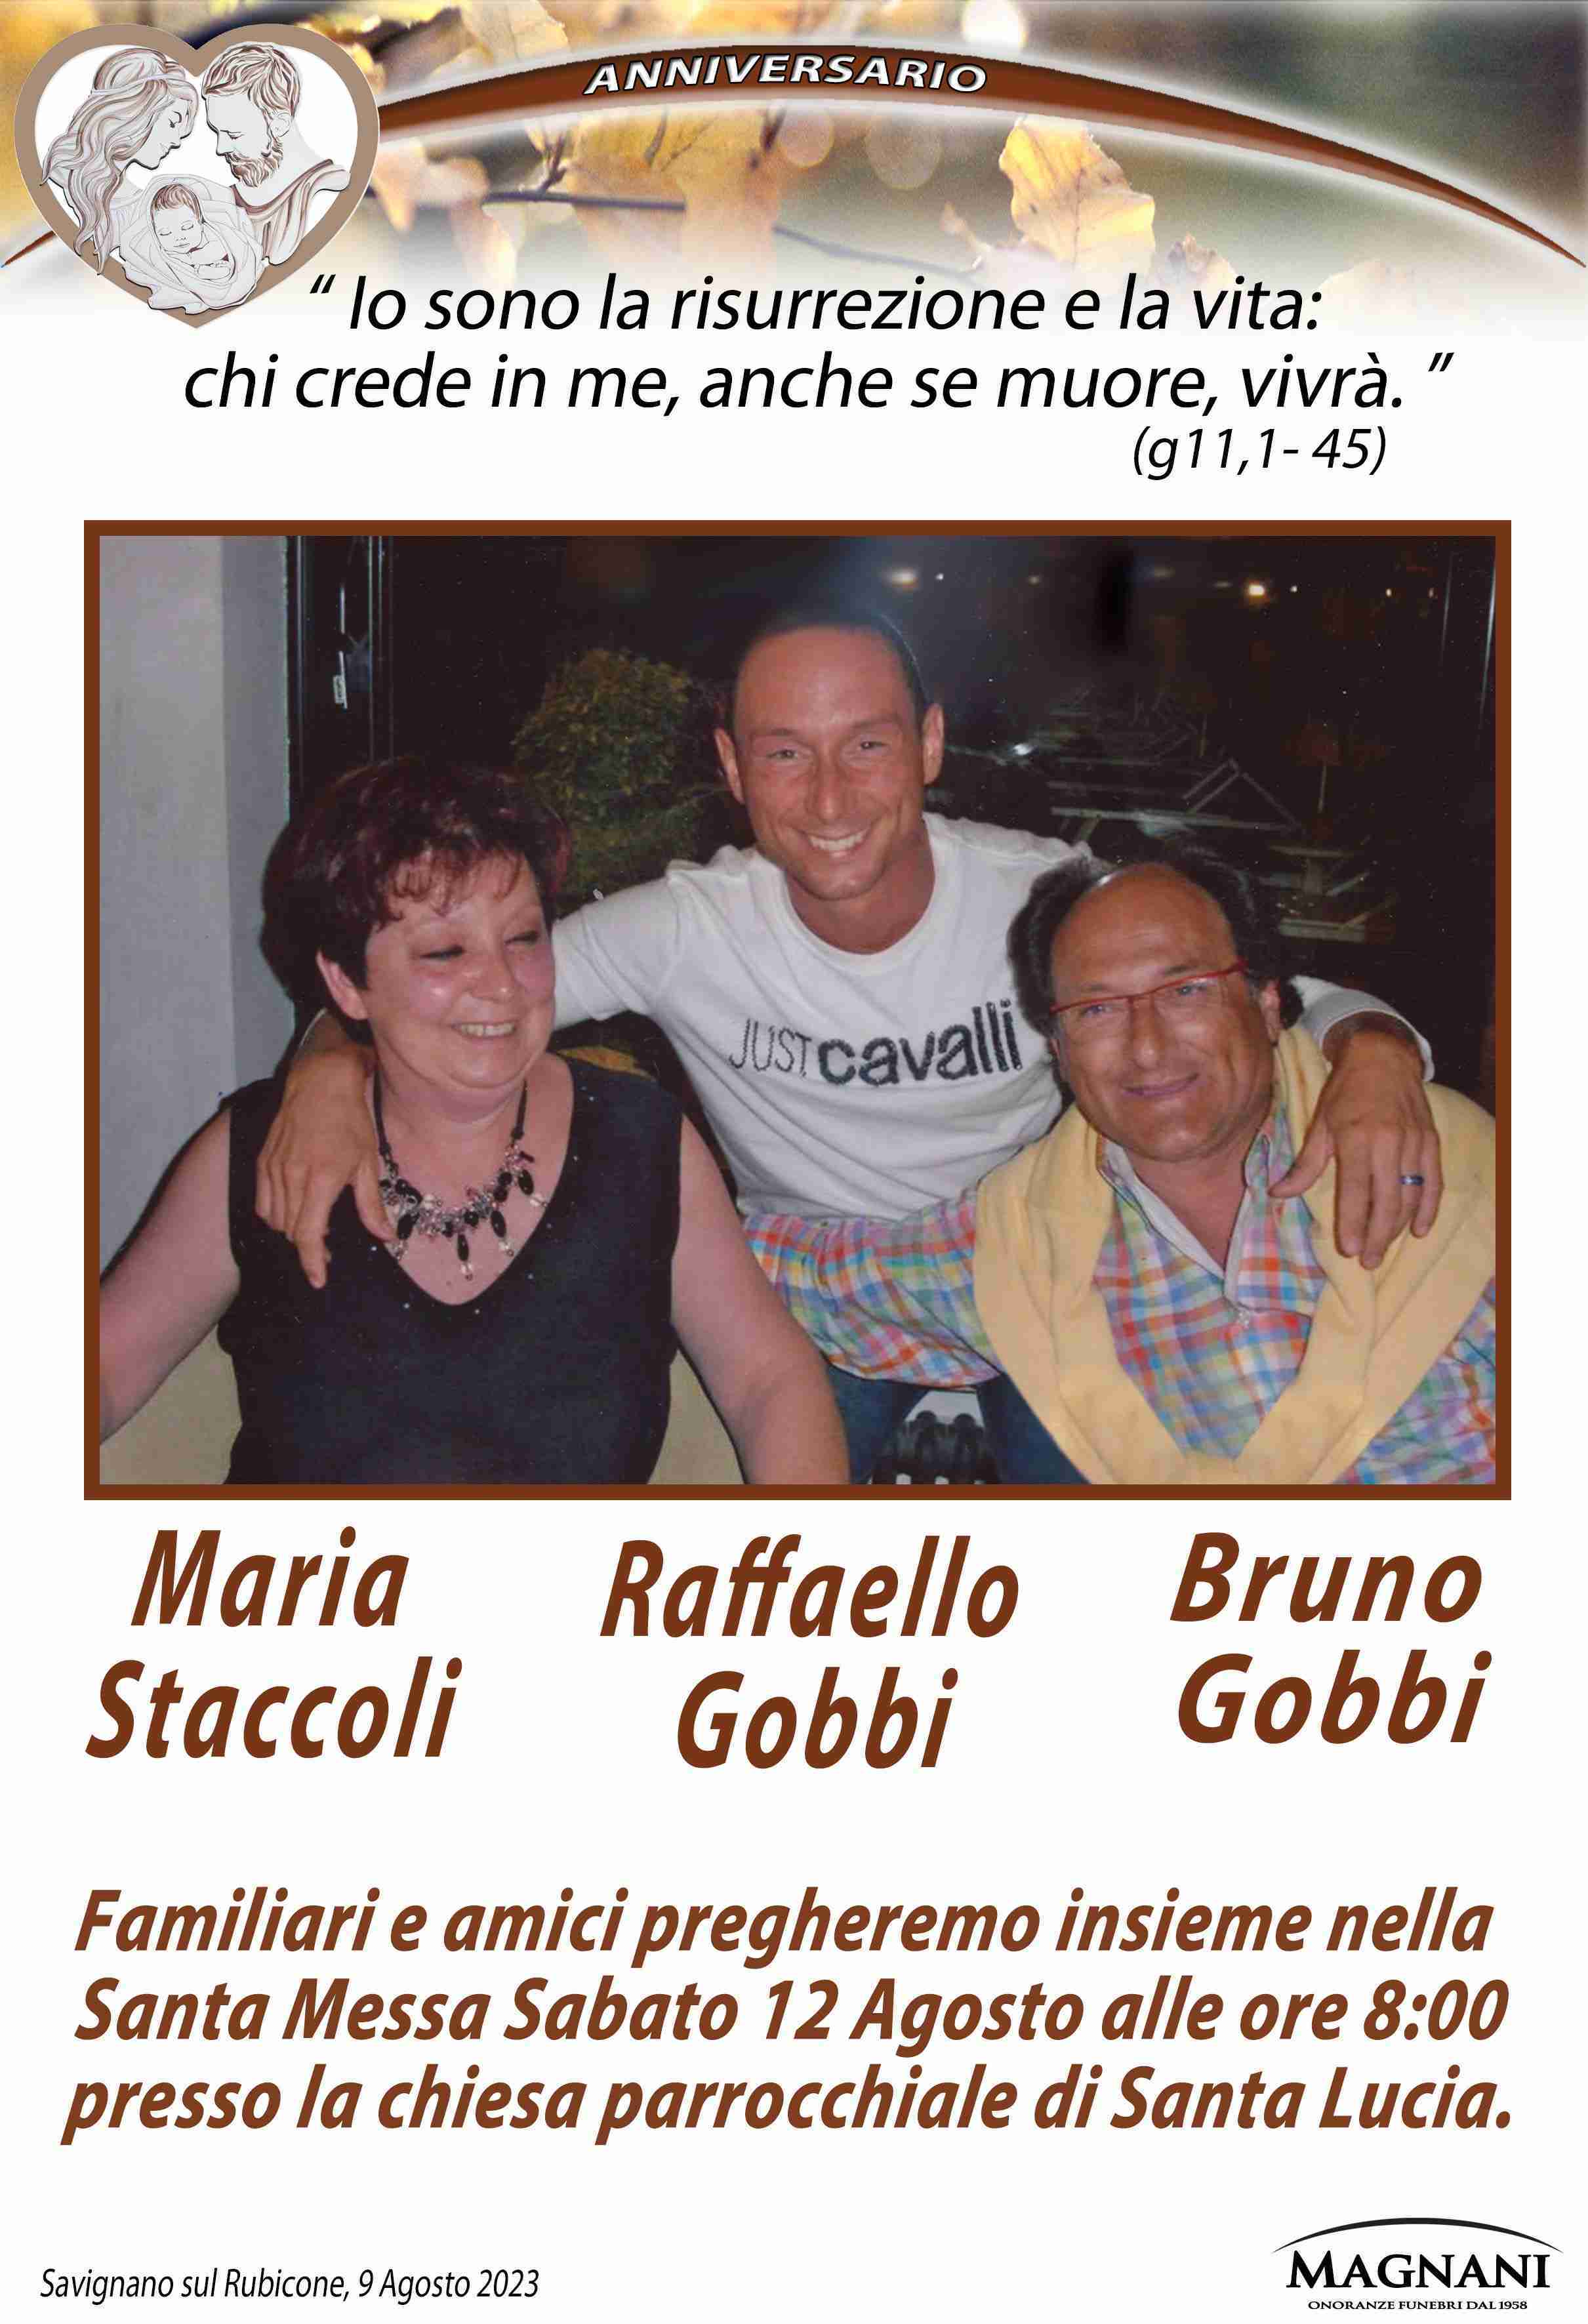 Maria Staccoli, Raffaello Gobbi e Bruno Gobbi